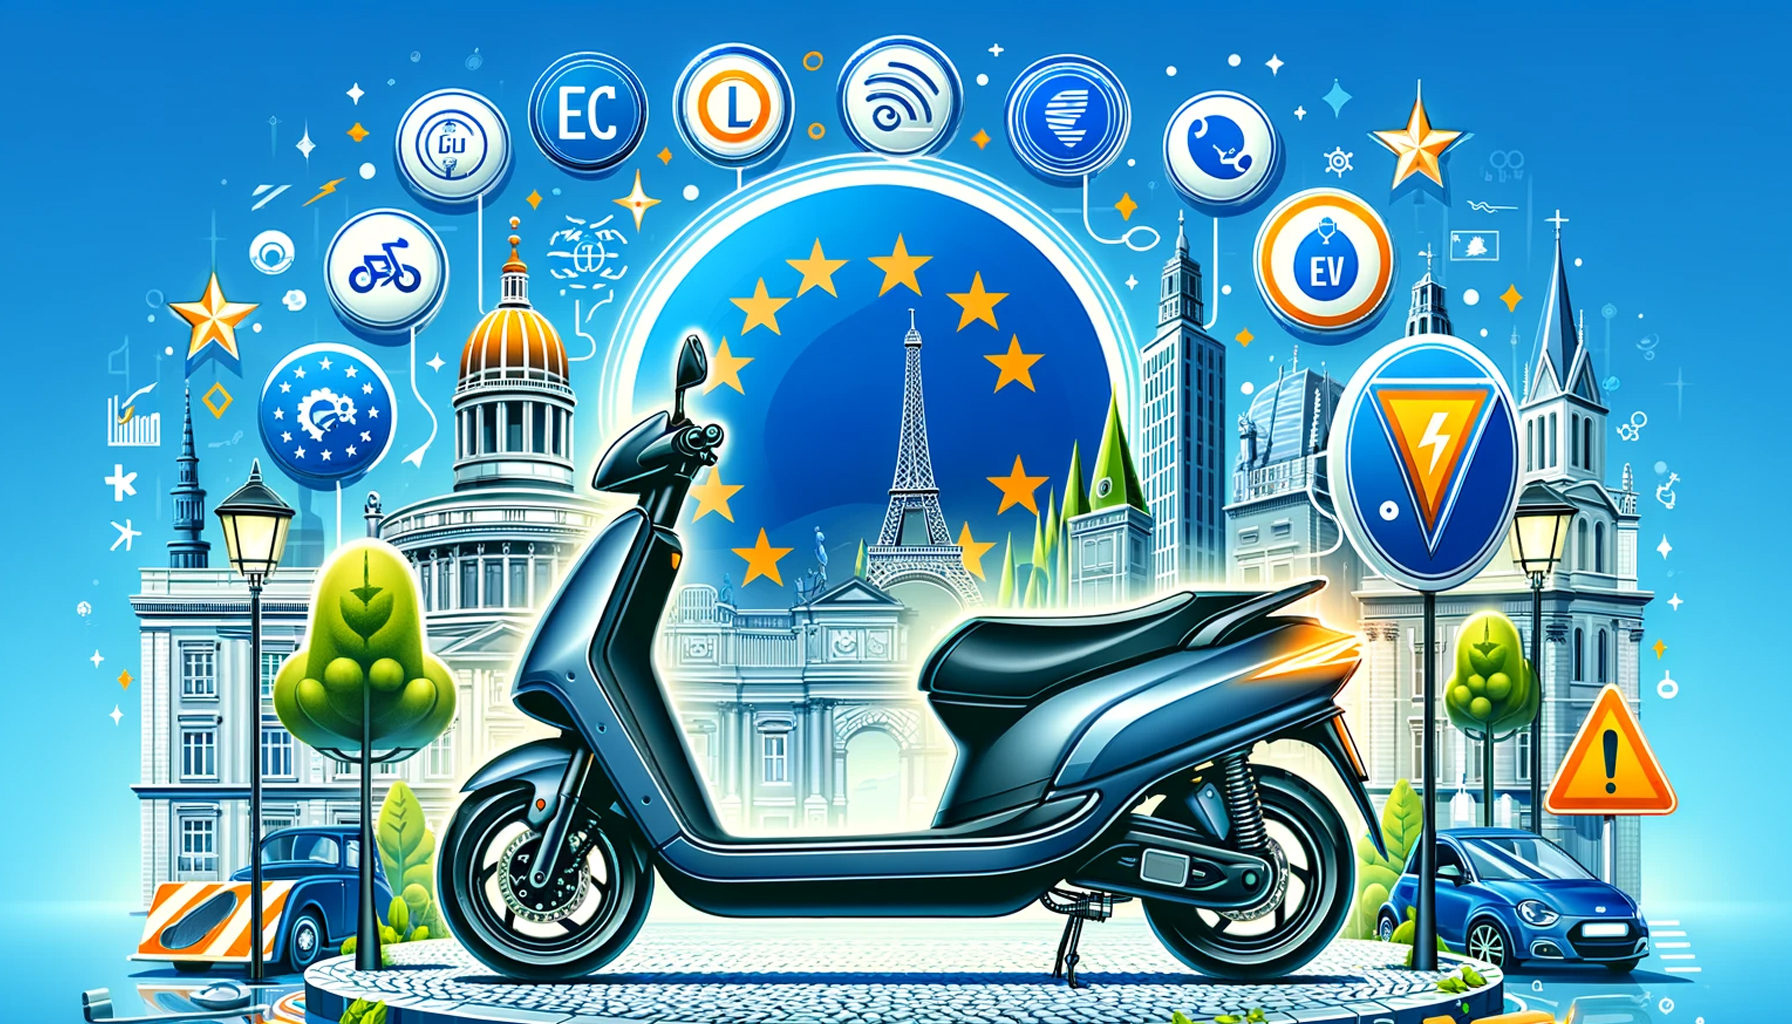 Une image d'un scooter entouré d'icônes représentant les normes européennes des scooters électriques.